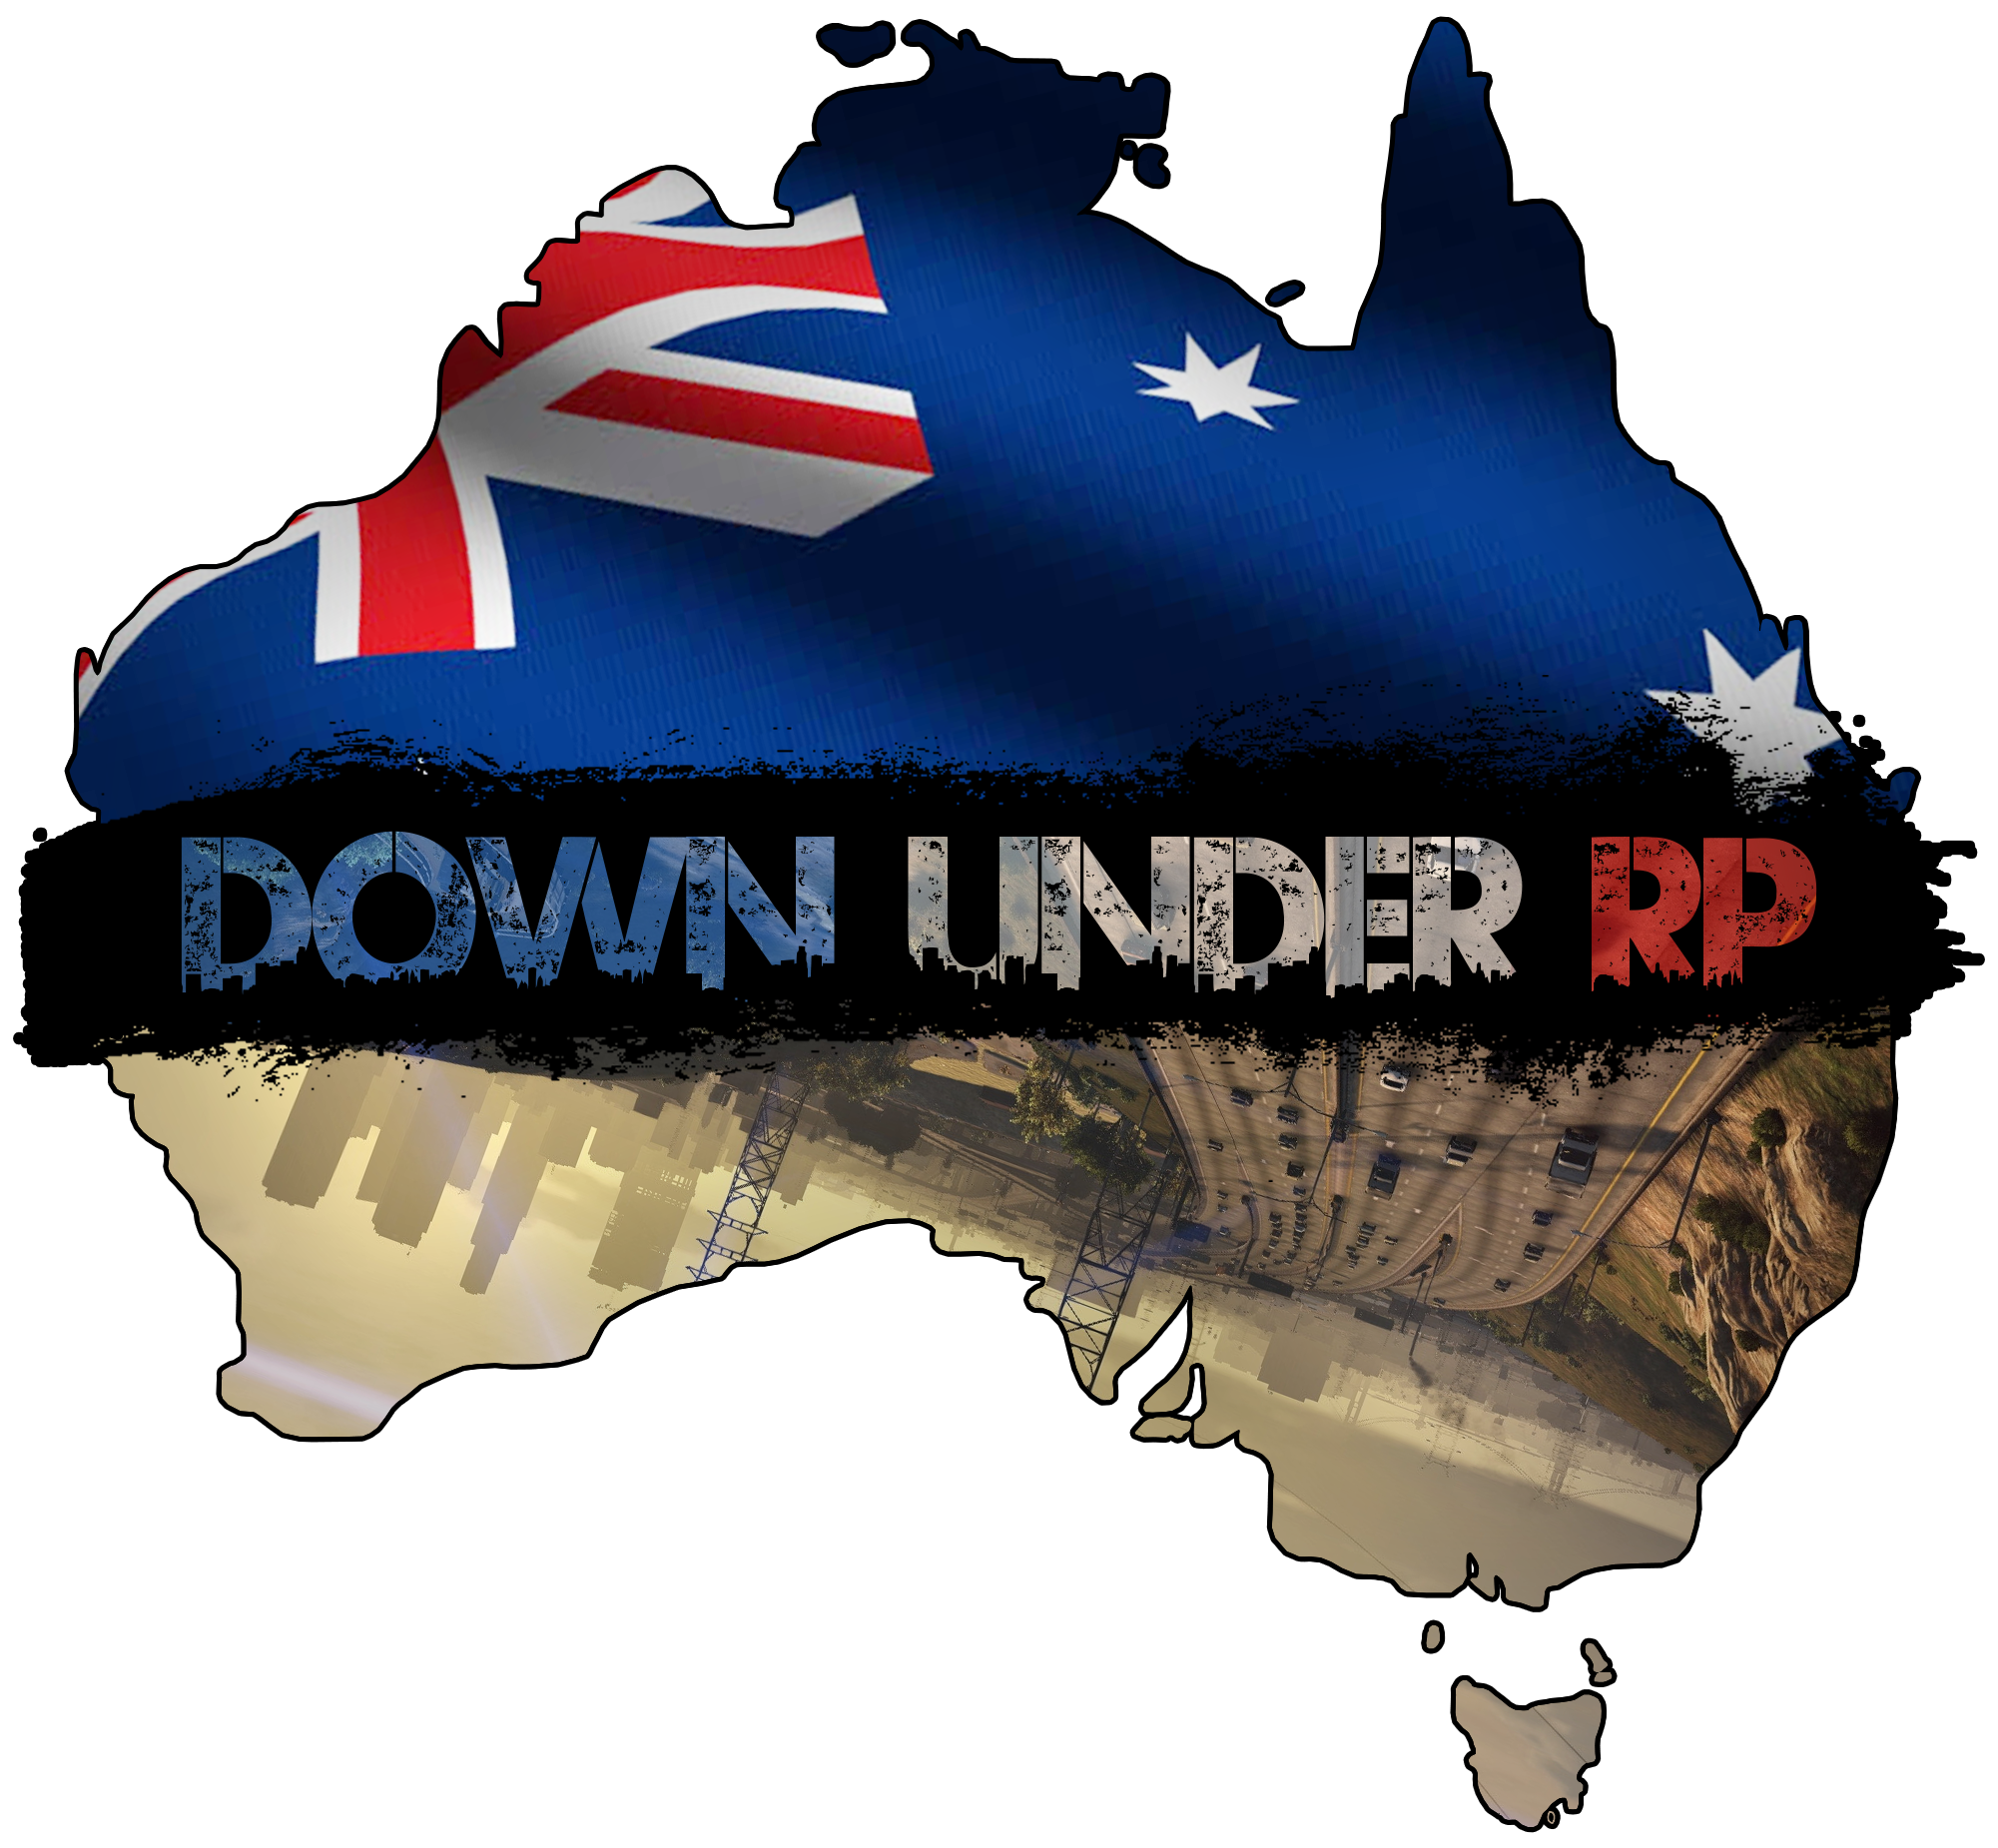 Download Downunderrp Logo   Fivem Logos   Full Size Png Image   Pngkit - Fivem, Transparent background PNG HD thumbnail